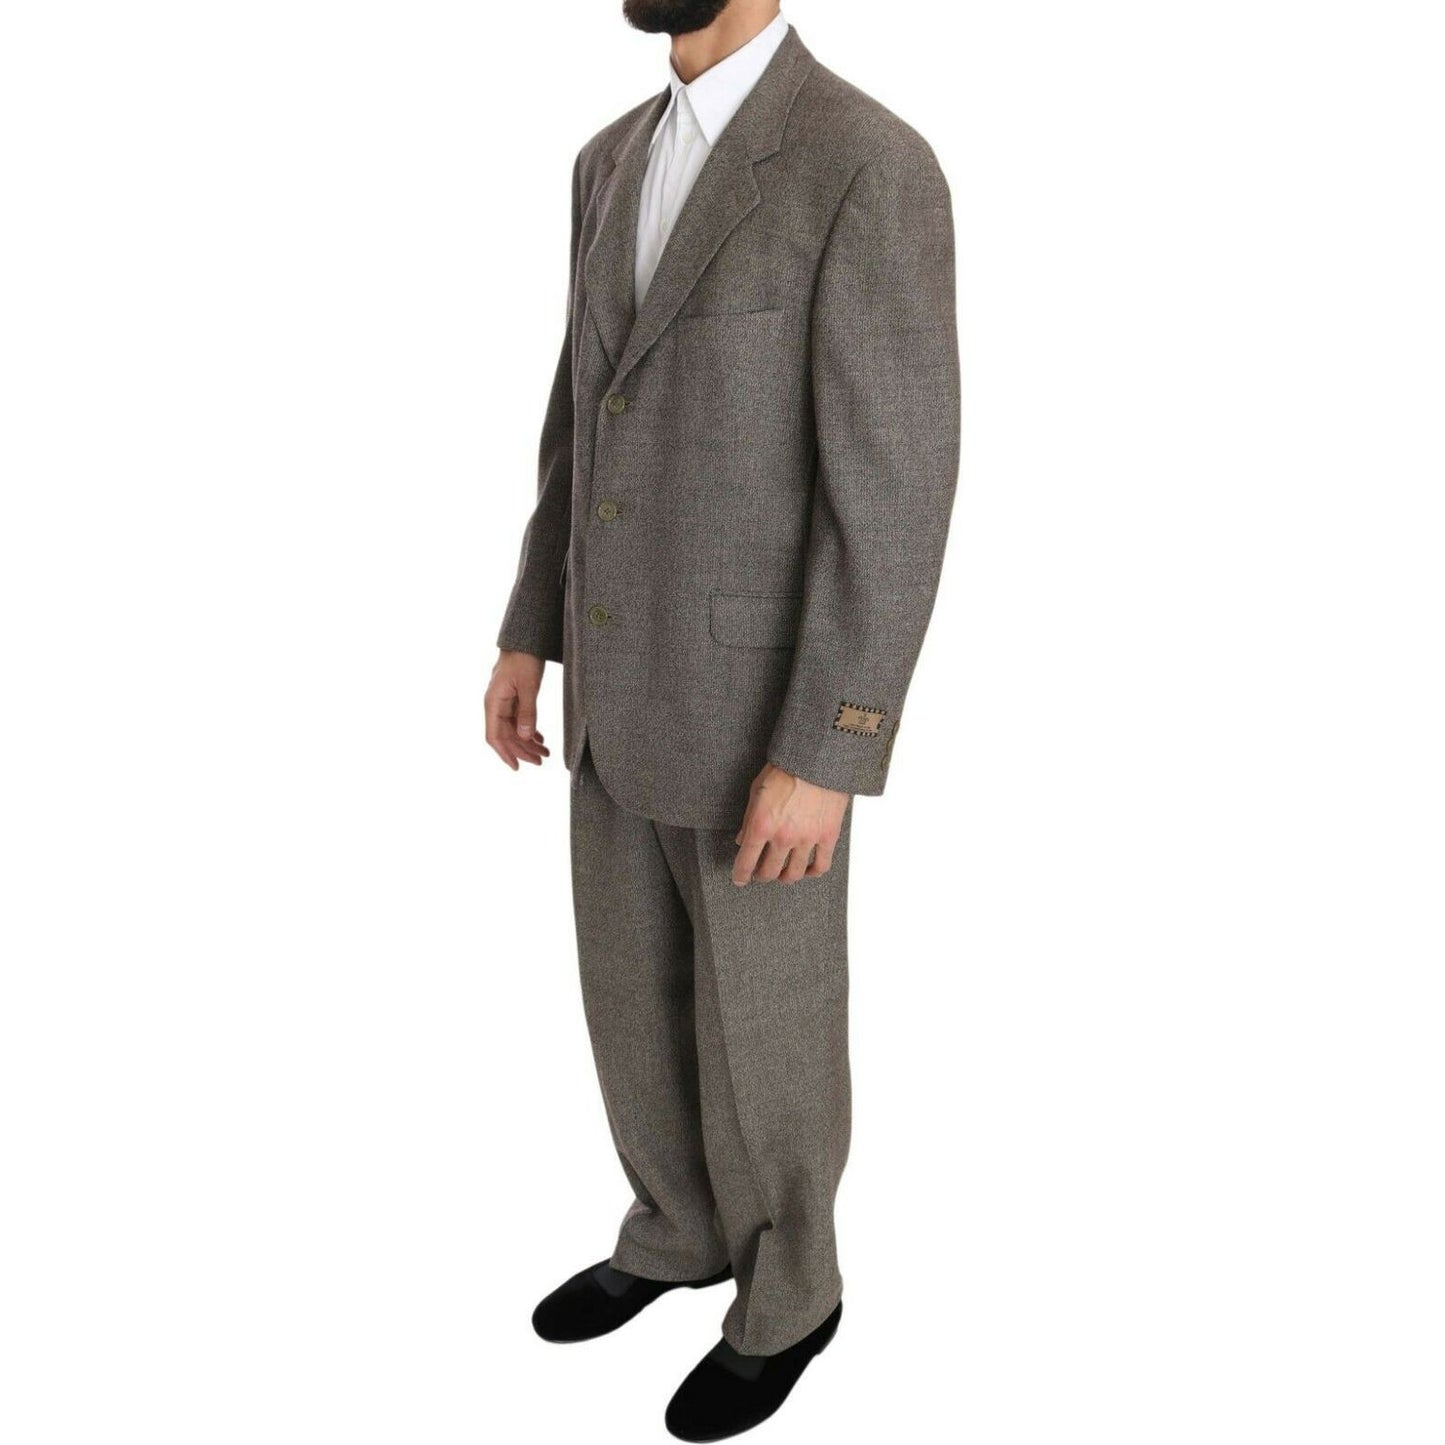 Fendi Elegant Light Brown Wool Men's Suit Suit brown-wool-regular-single-breasted-suit s-l1600-2022-09-23T111937.965-5dffb04d-25a.jpg